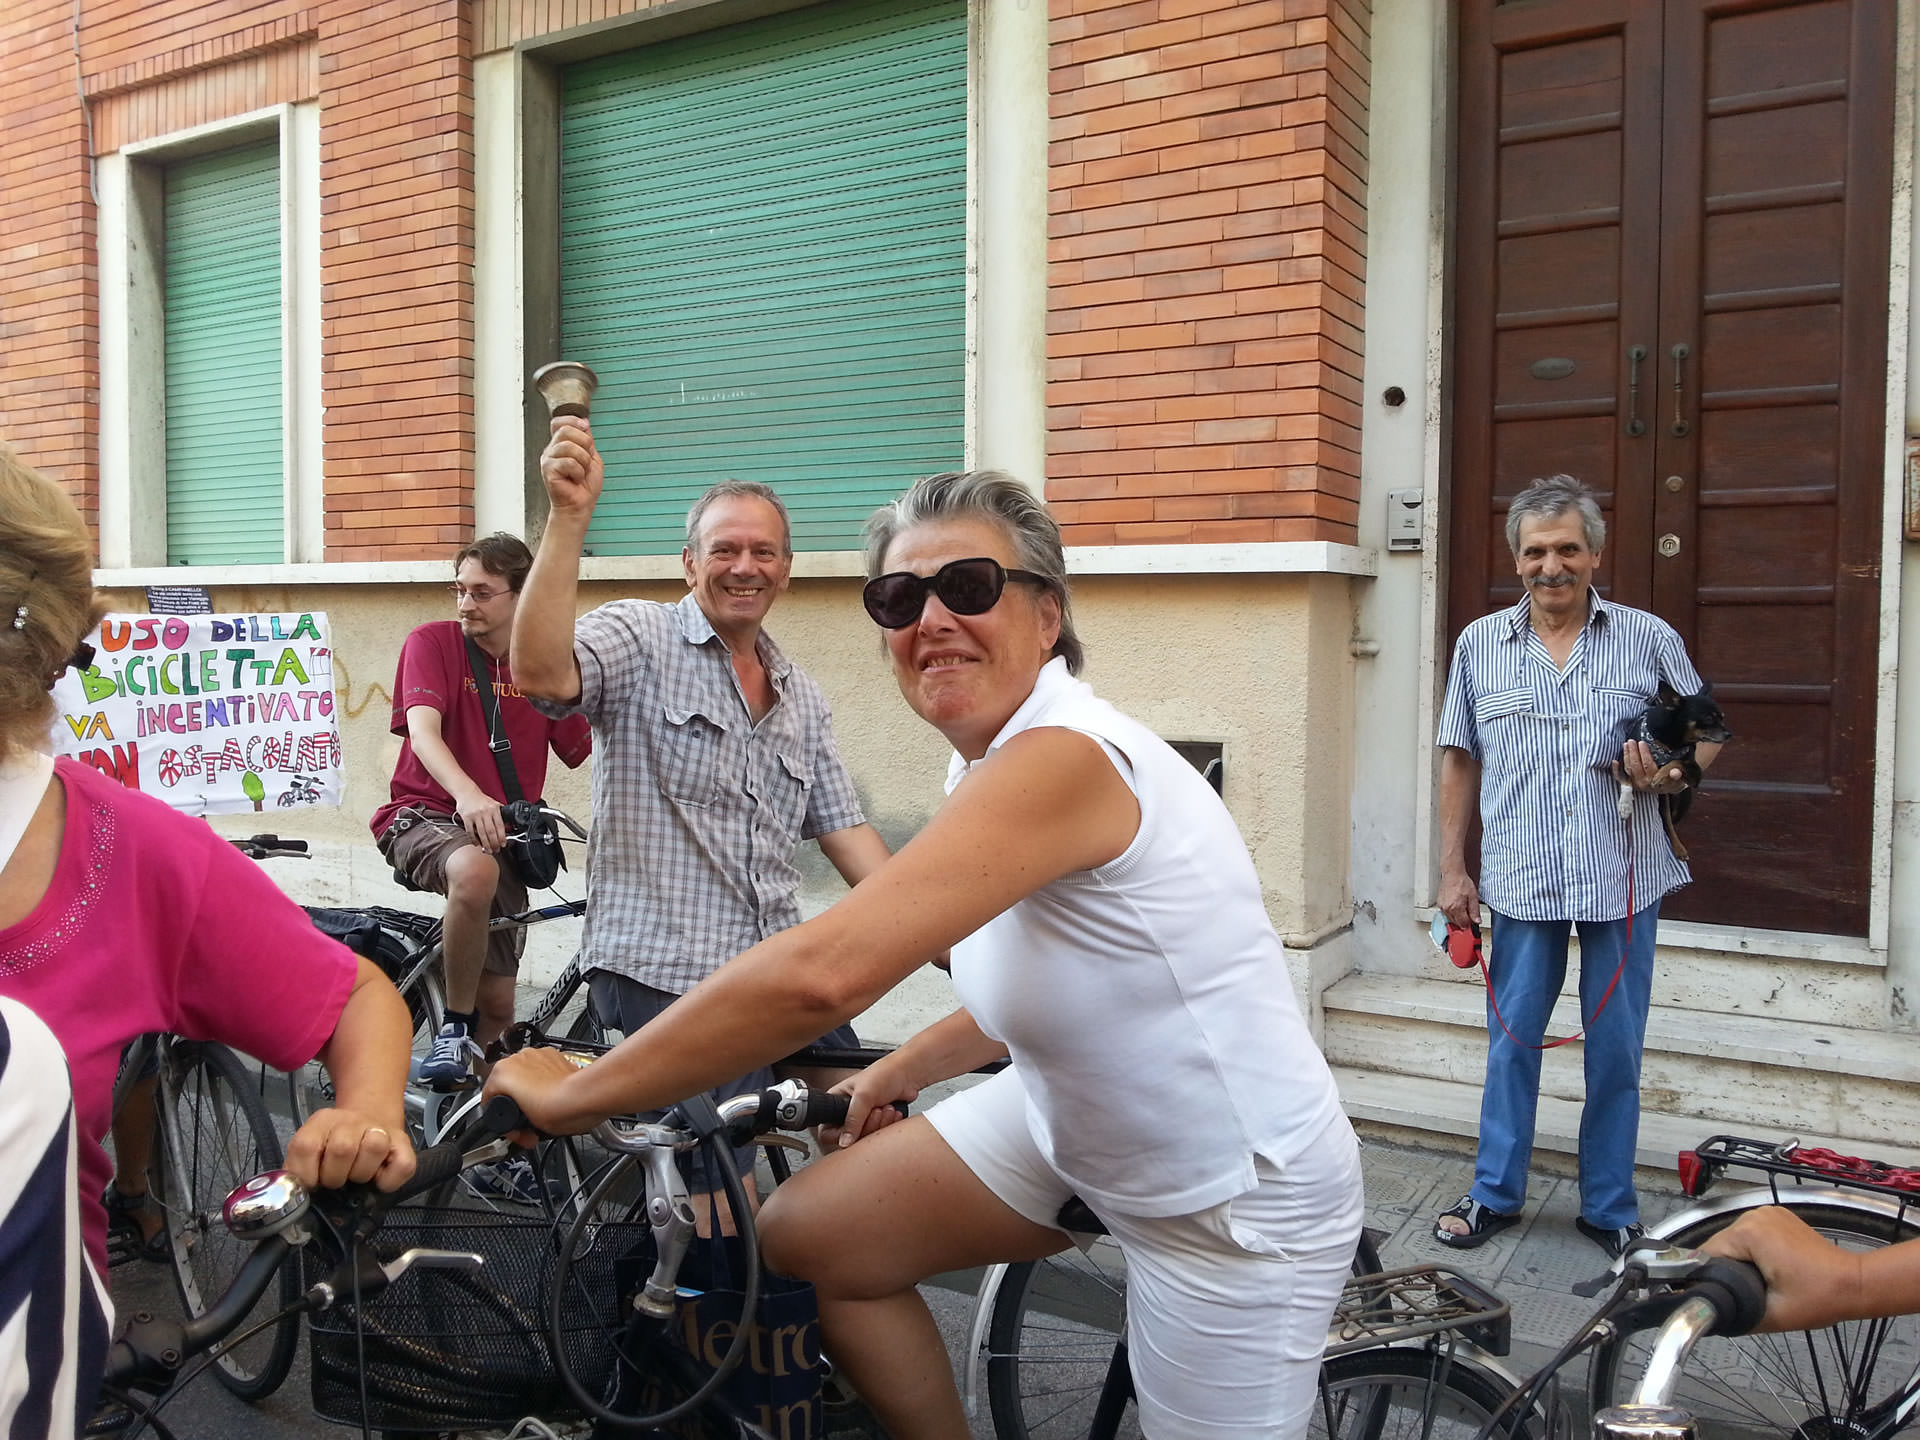 Rossella Martina replica al sindaco. “Noi maleducati? È lui che vieta le bici sotto casa sua”